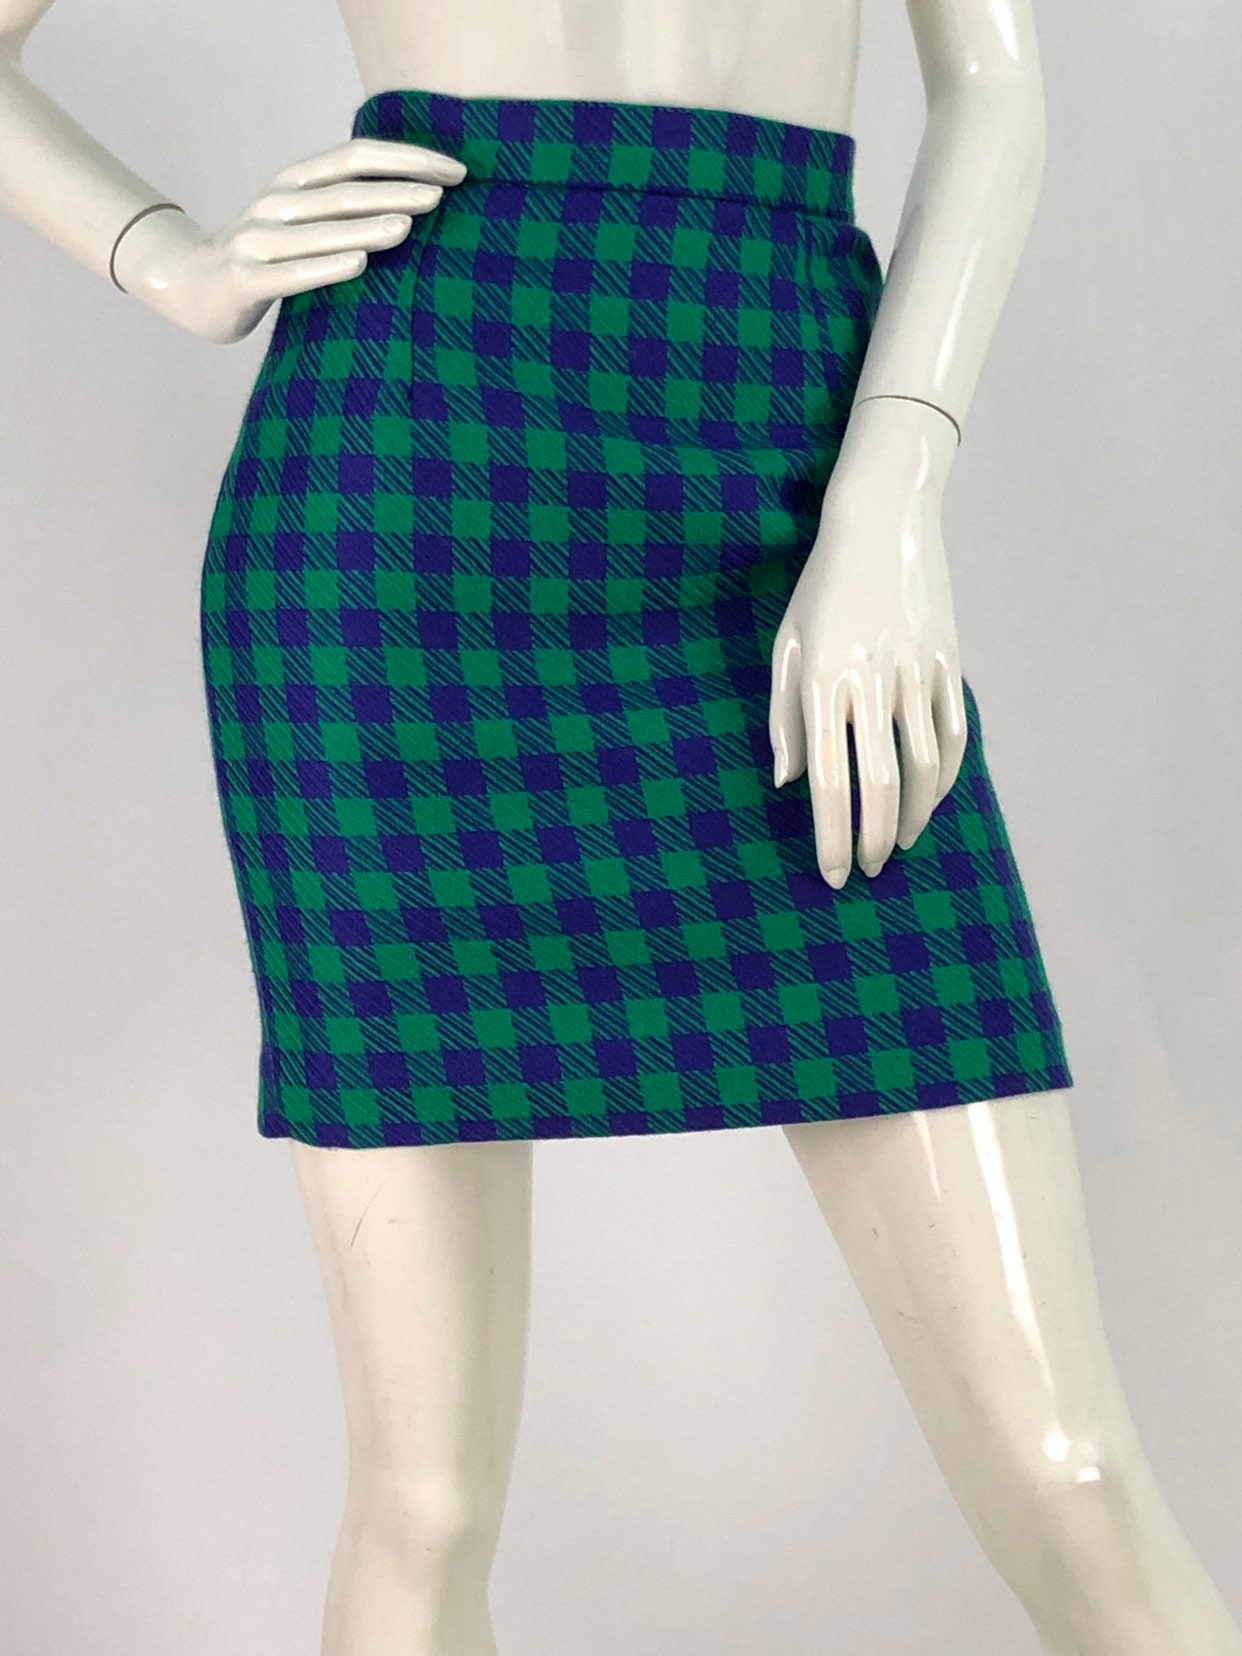 80s 90s wool skirt/vintage wool skirt | Etsy